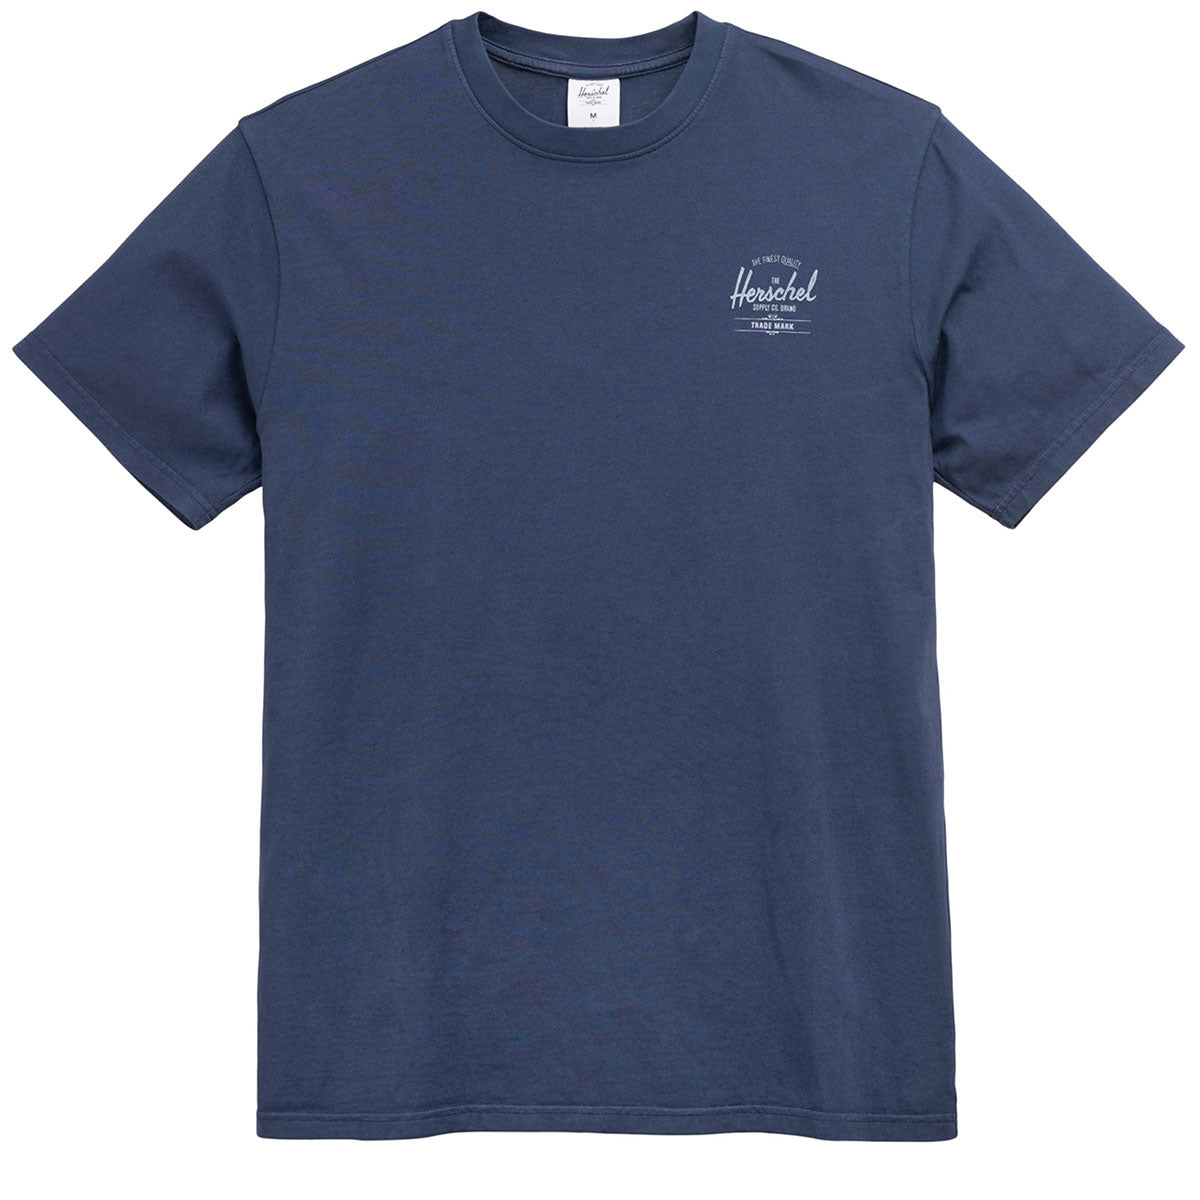 Herschel Supply Basic T-Shirt - Dark Navy/White image 1